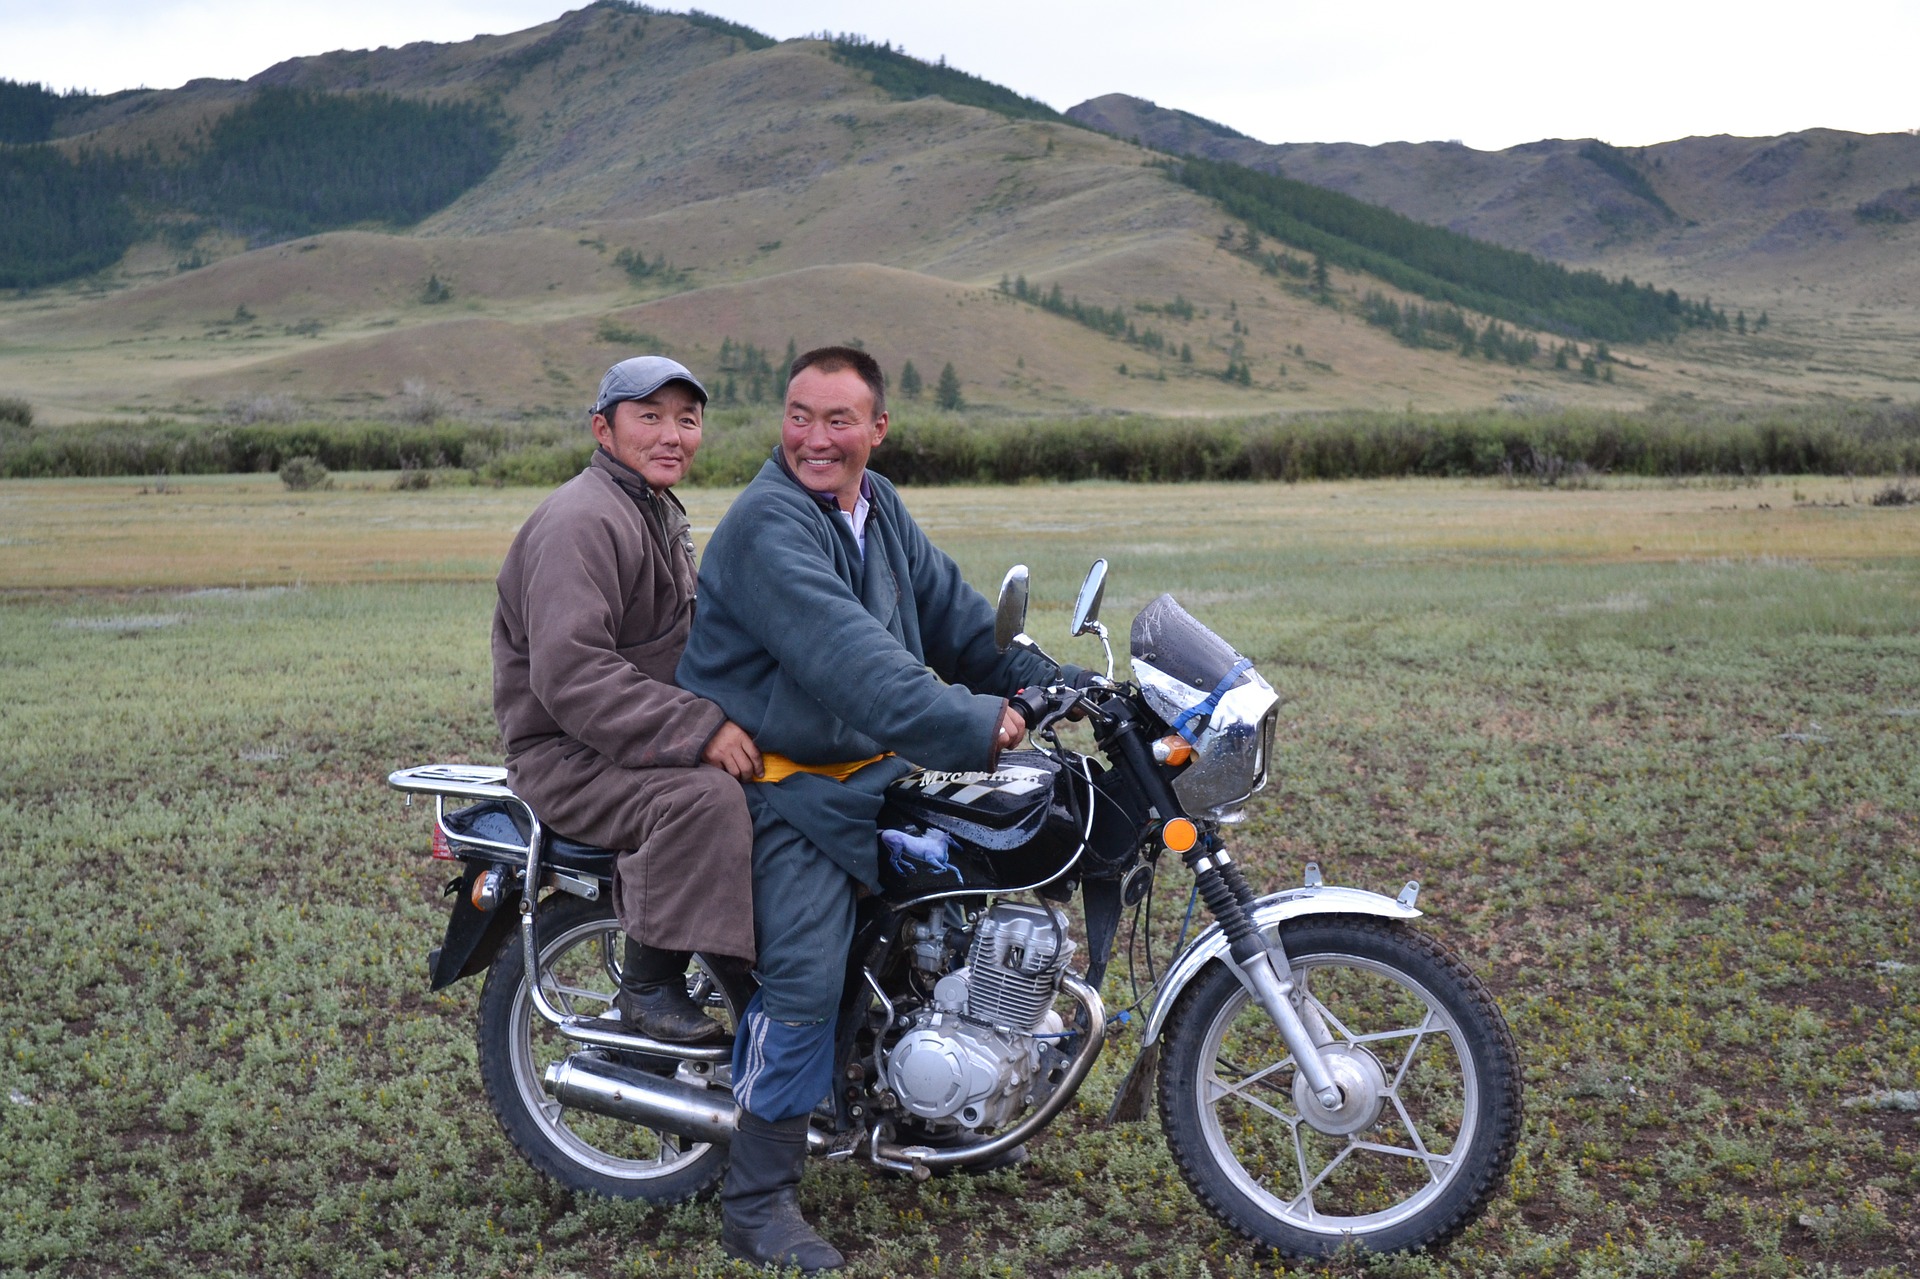 moto mongolie agence de voyages phileas frog paris 17